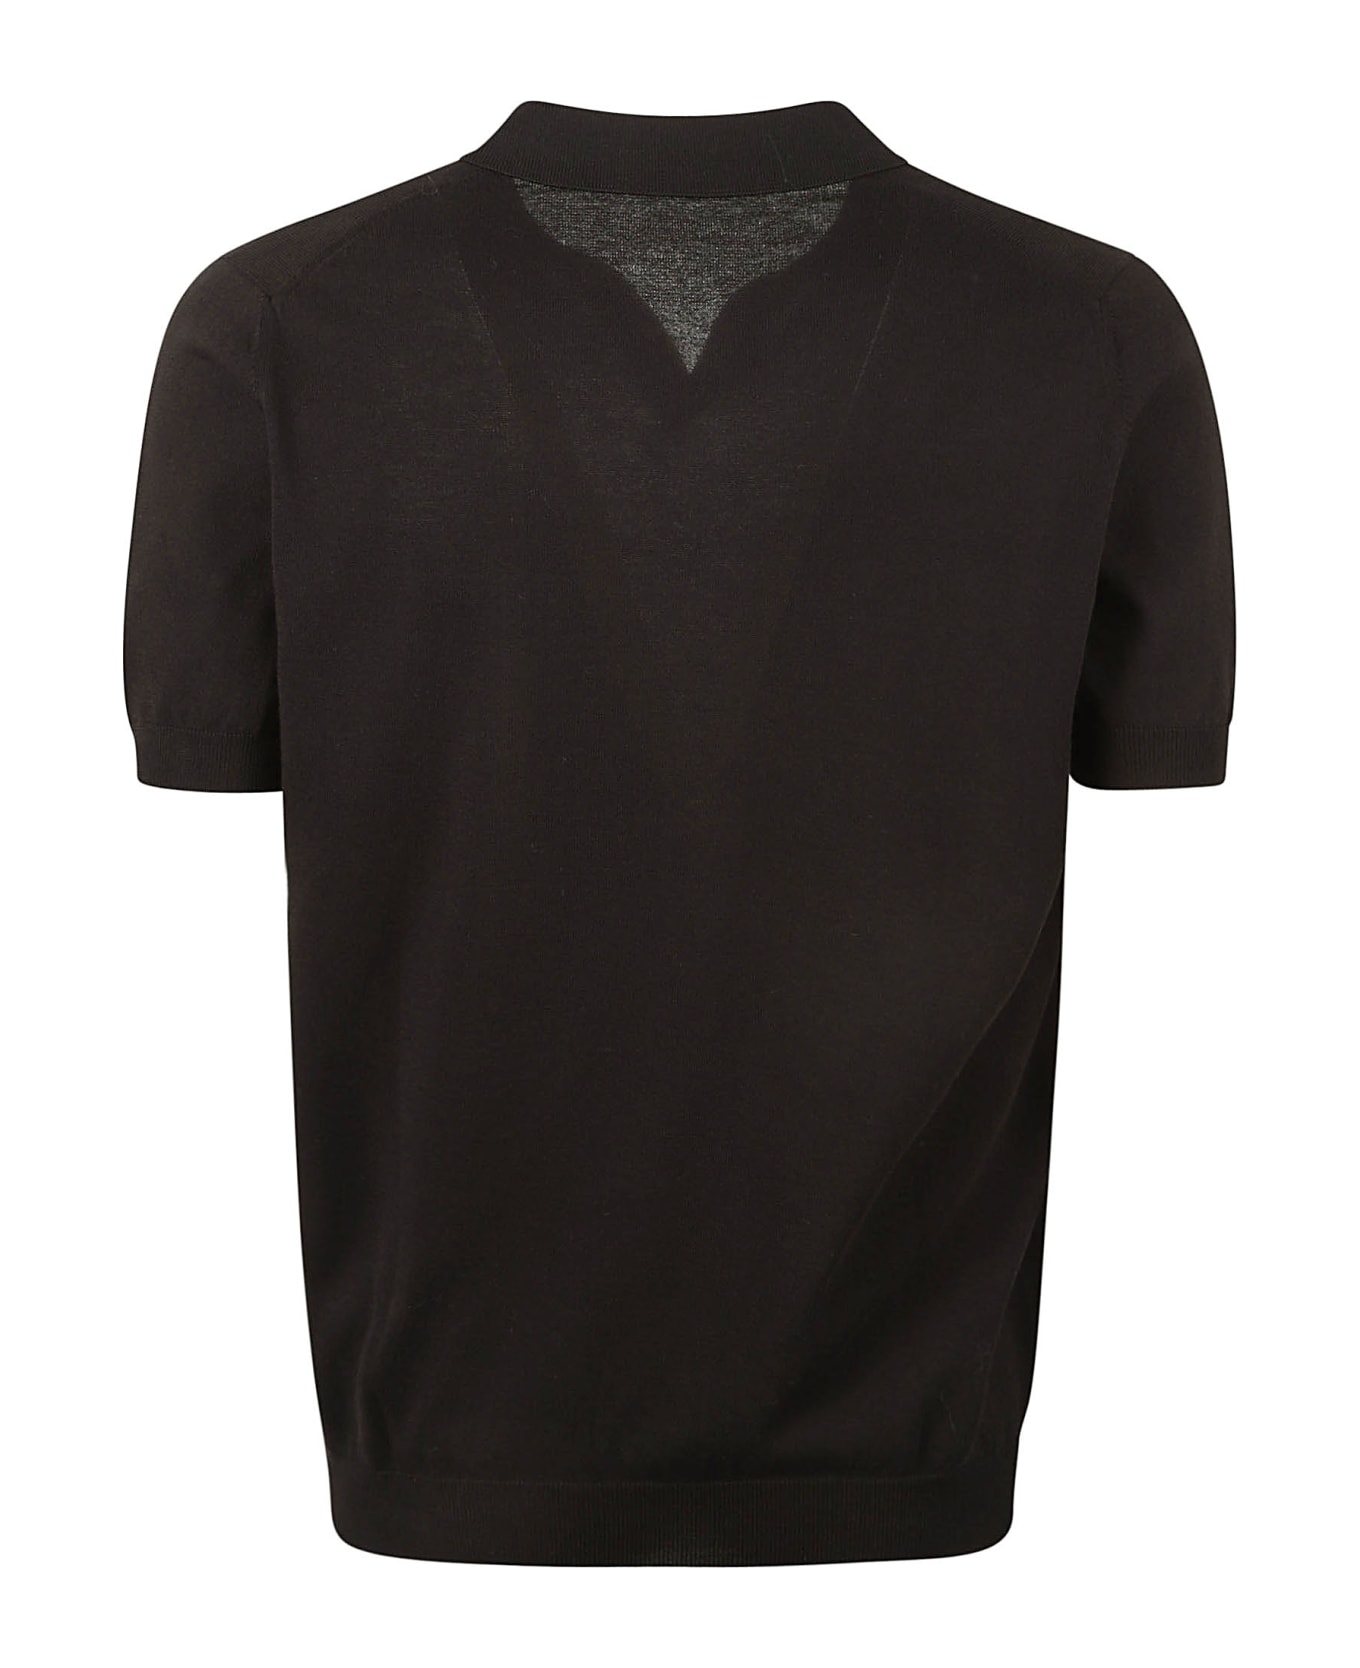 Tagliatore Button-less Placket Polo Shirt - Nero シャツ